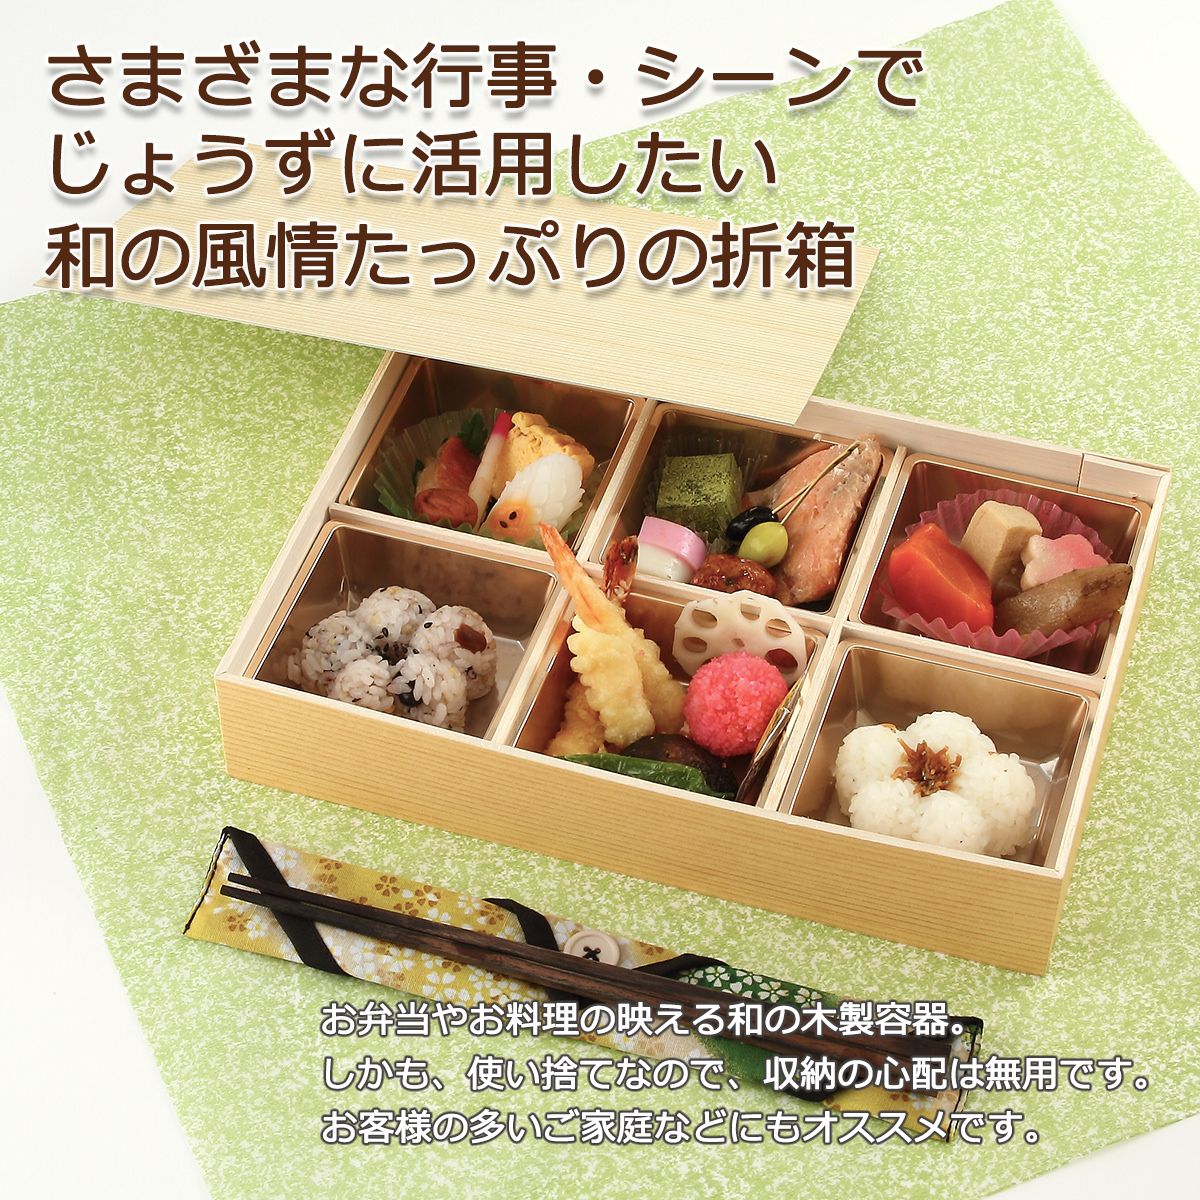 松花堂弁当箱 60個セット種類弁当箱 - 弁当箱・水筒